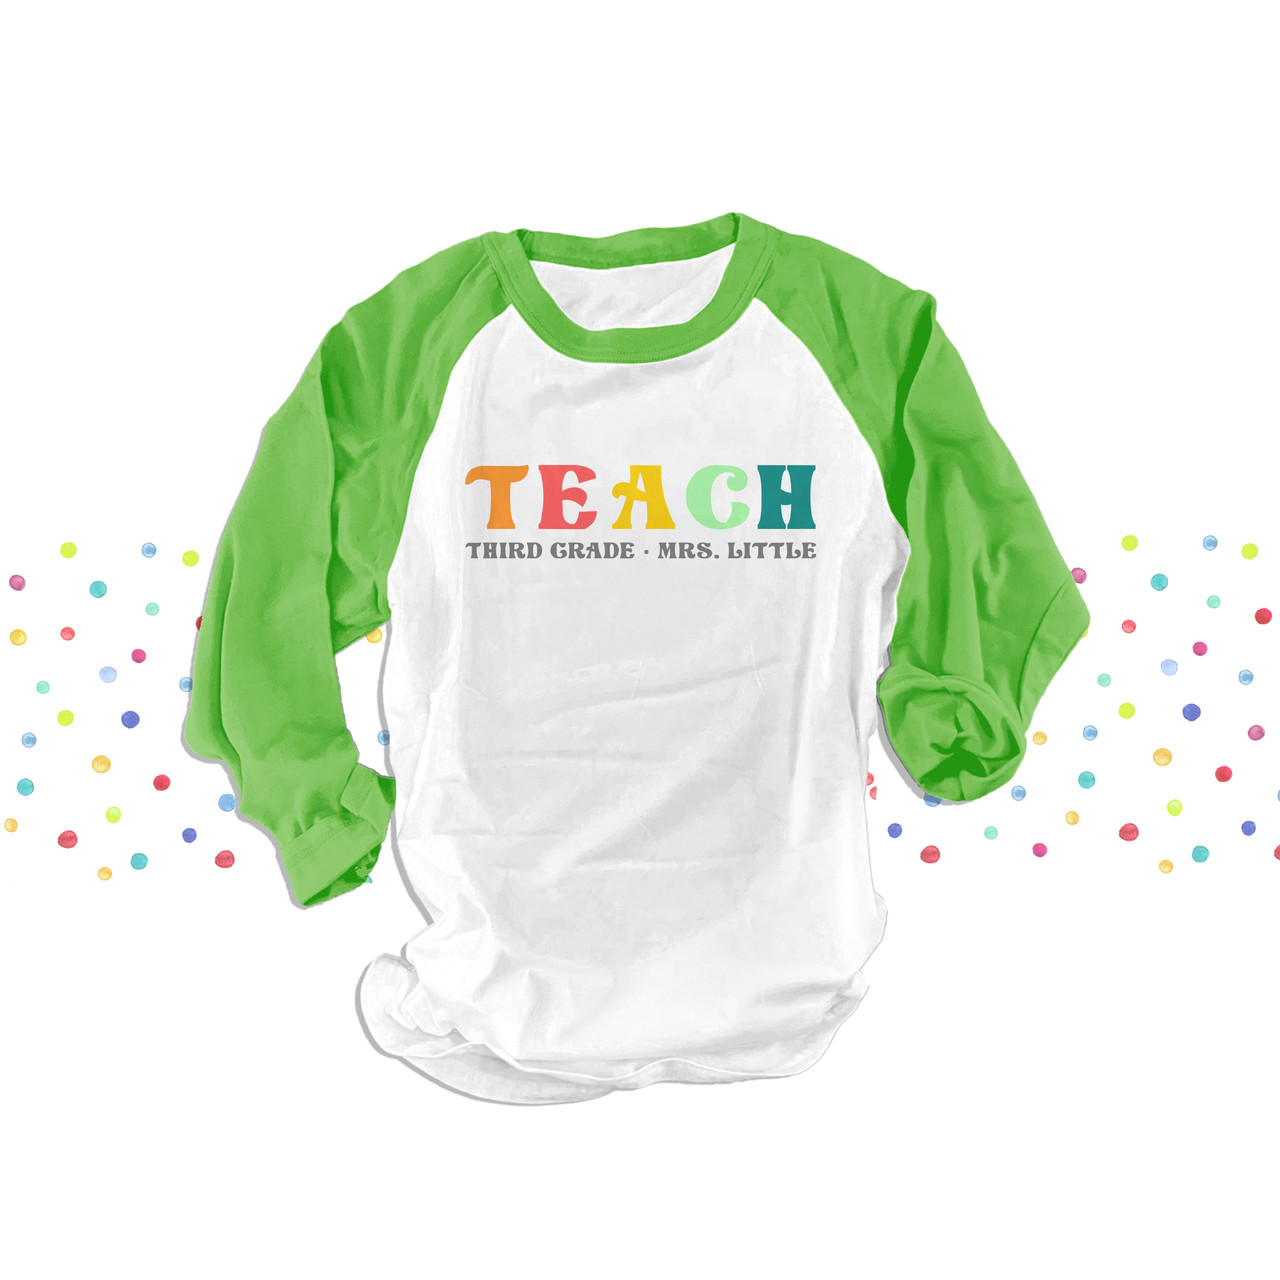 second third any grade personalized DARK tshirt for teachers MSCL3-014D Team Teacher shirt first grade teach rainbow color text t-shirt